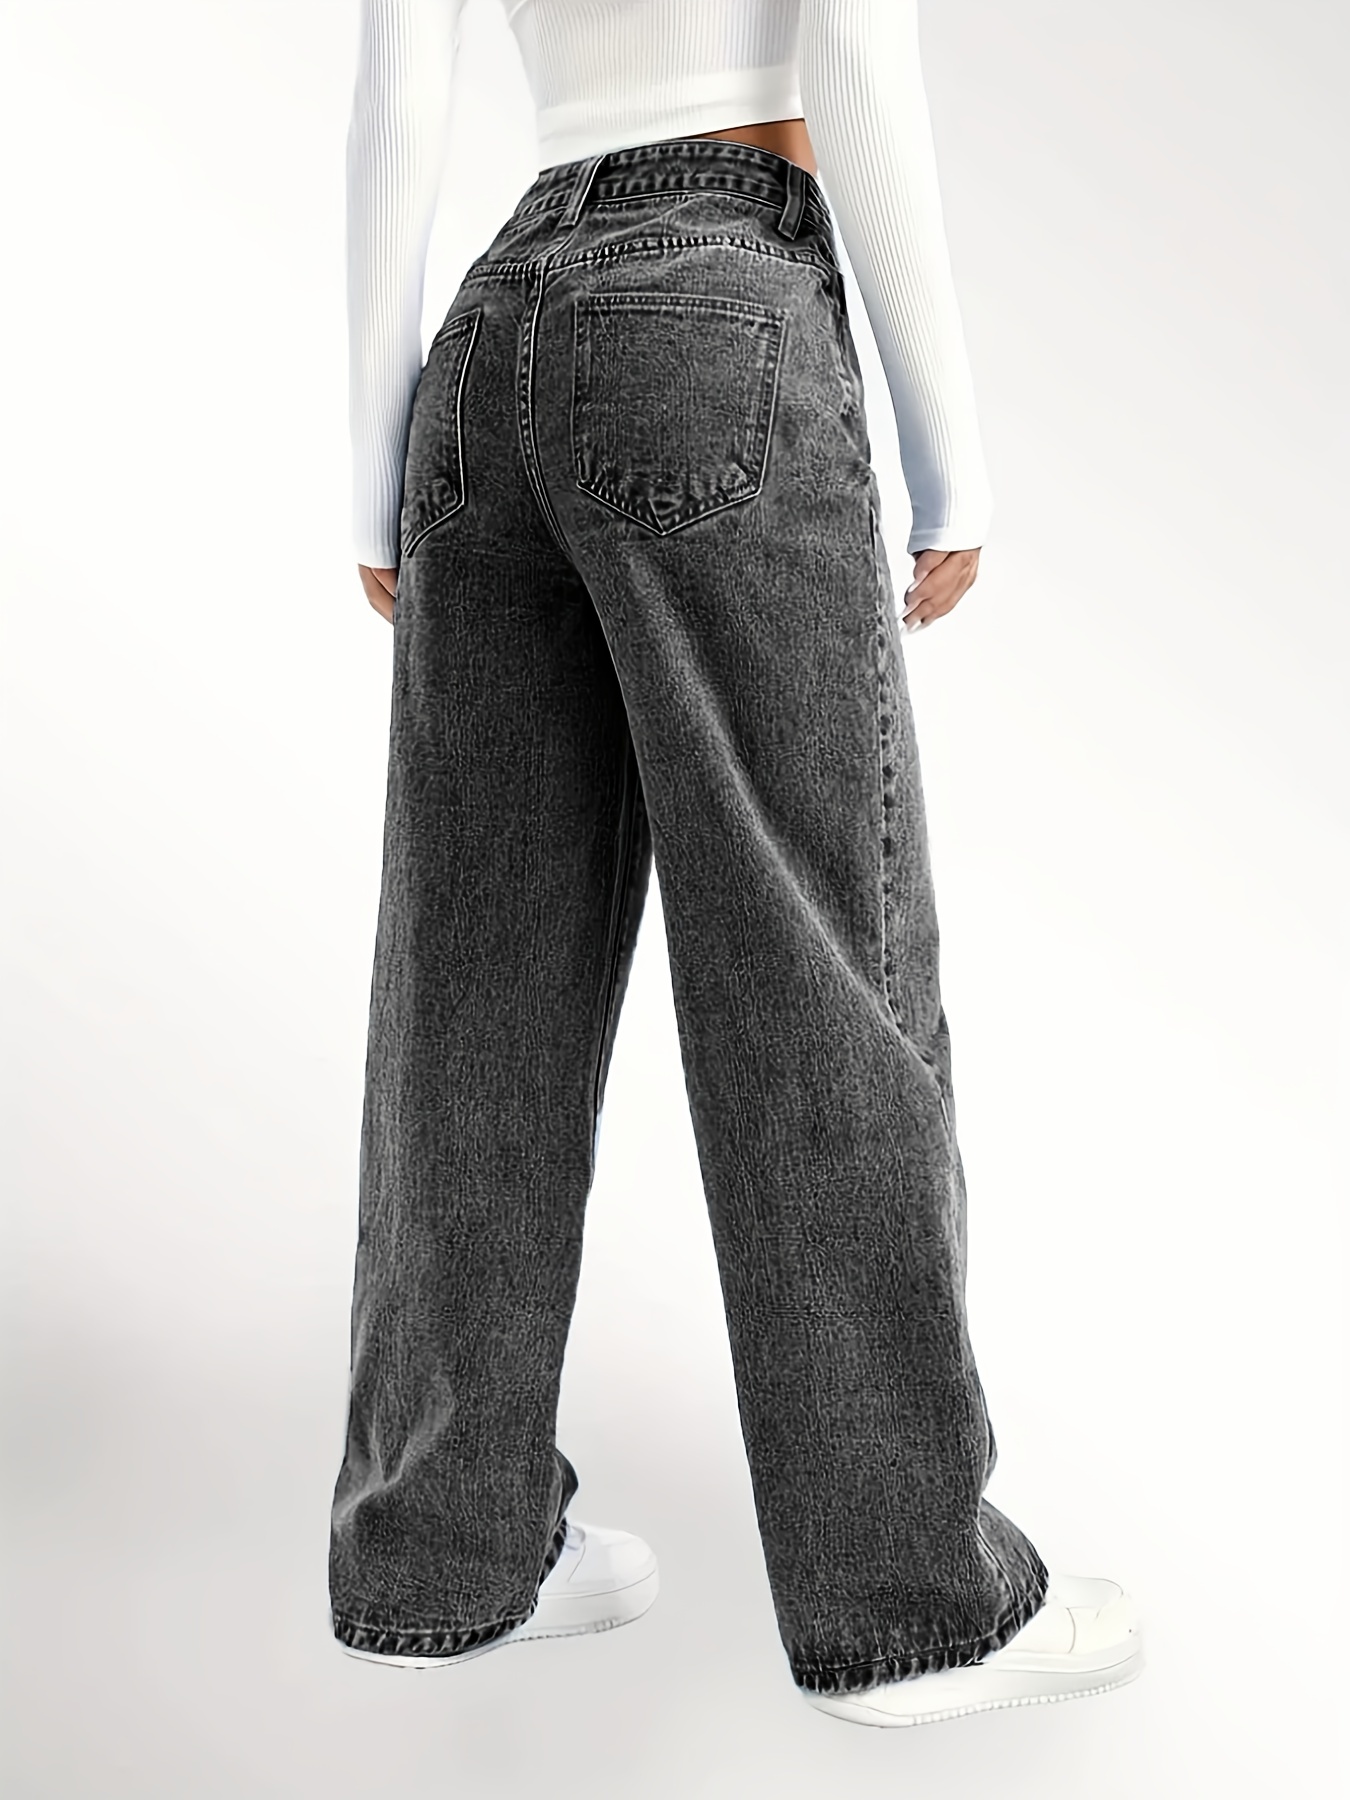 Pantalones Jeans Anchos Para Mujer